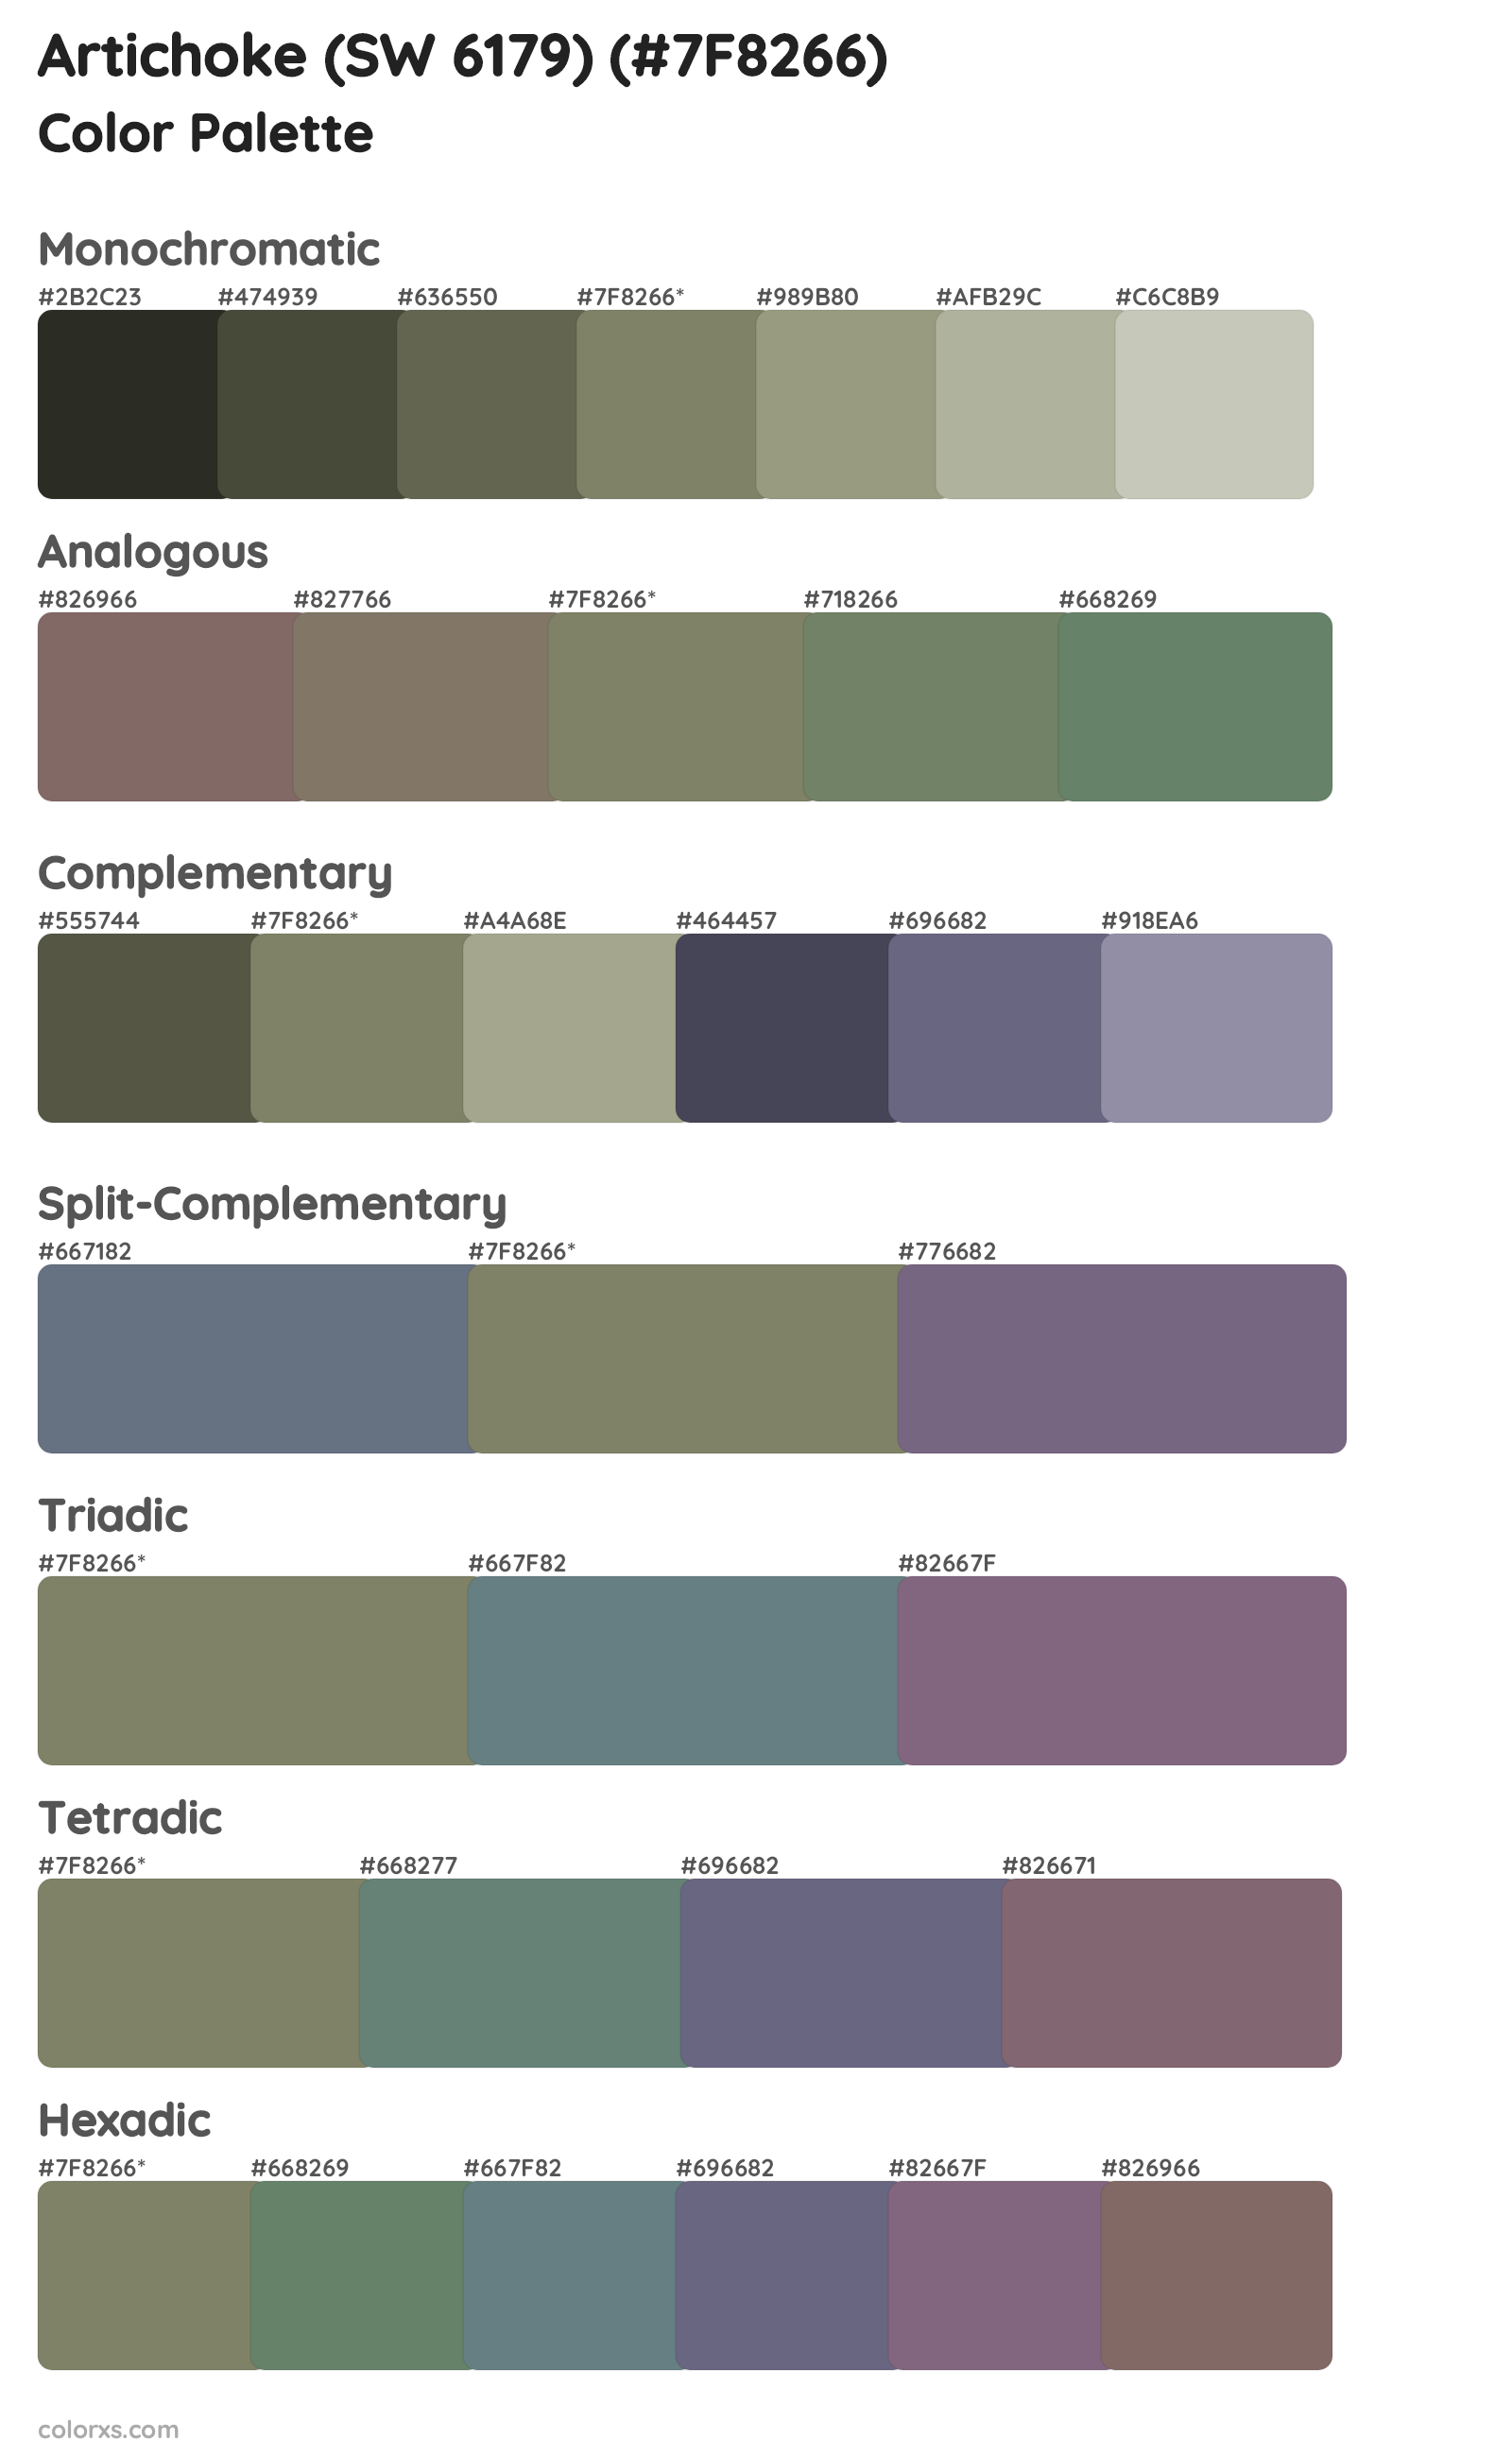 Artichoke (SW 6179) Color Scheme Palettes